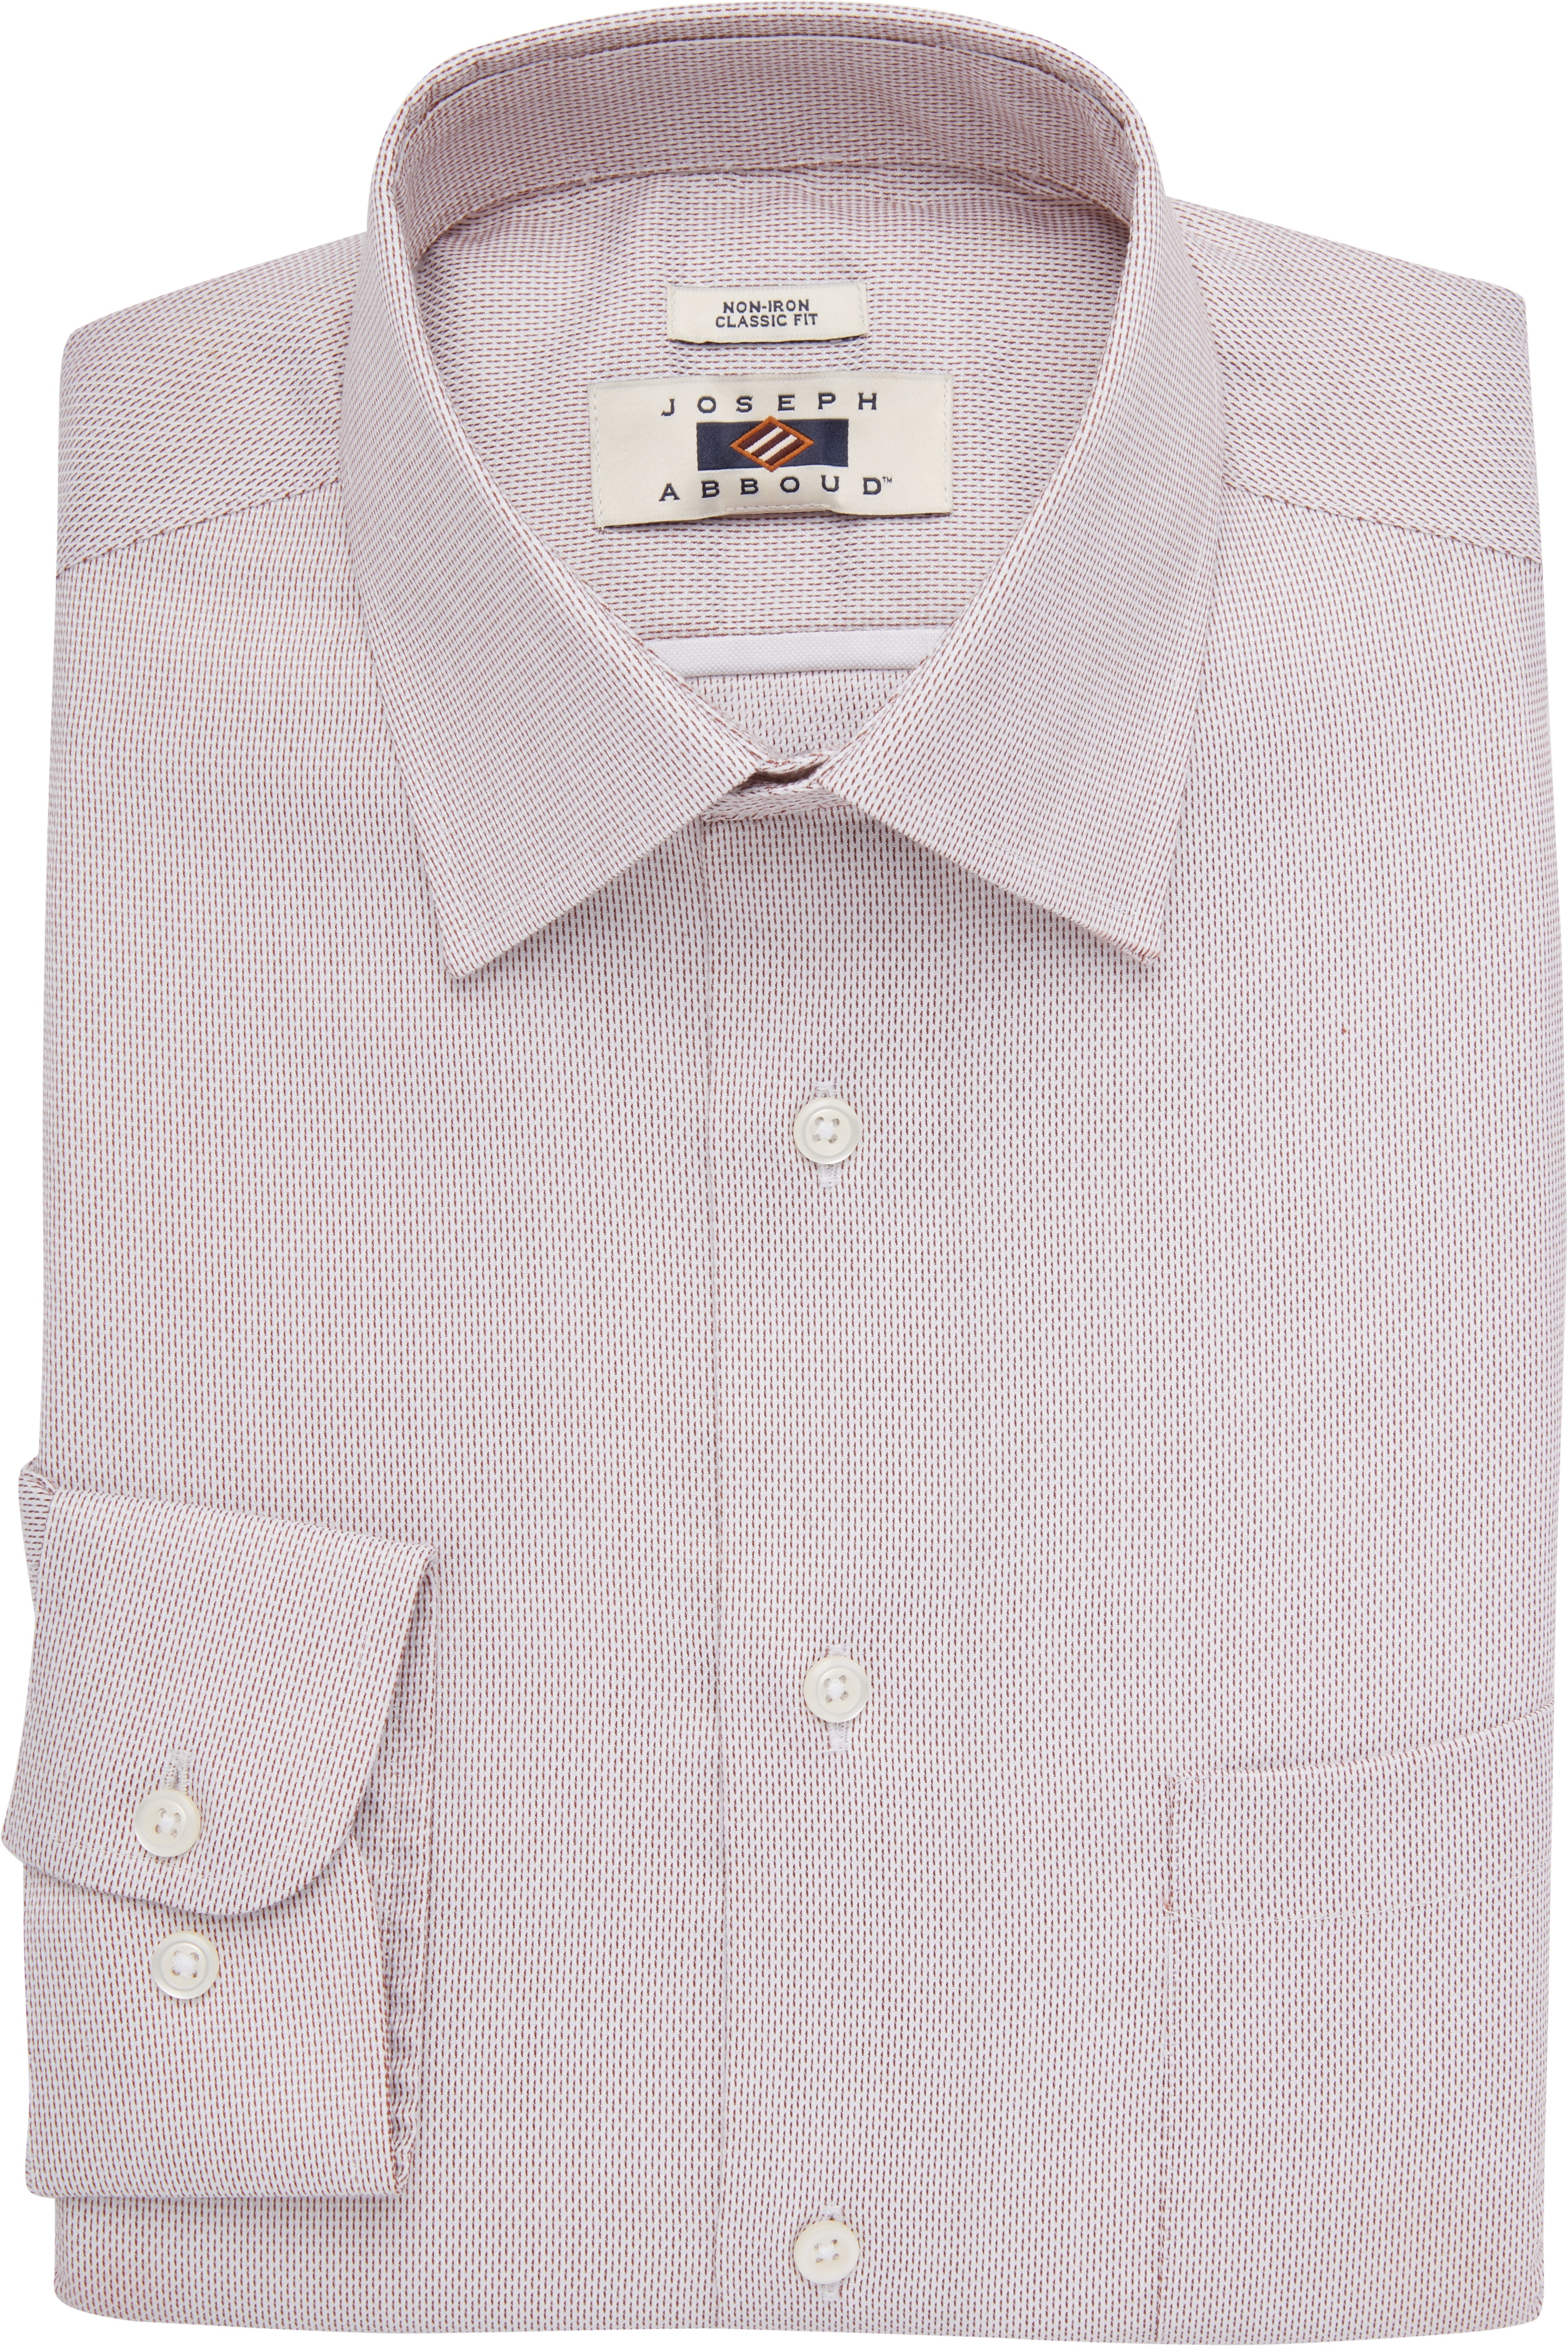 Joseph Abboud Tan Classic Fit Dress Shirt - Men's Sale | Men's Wearhouse